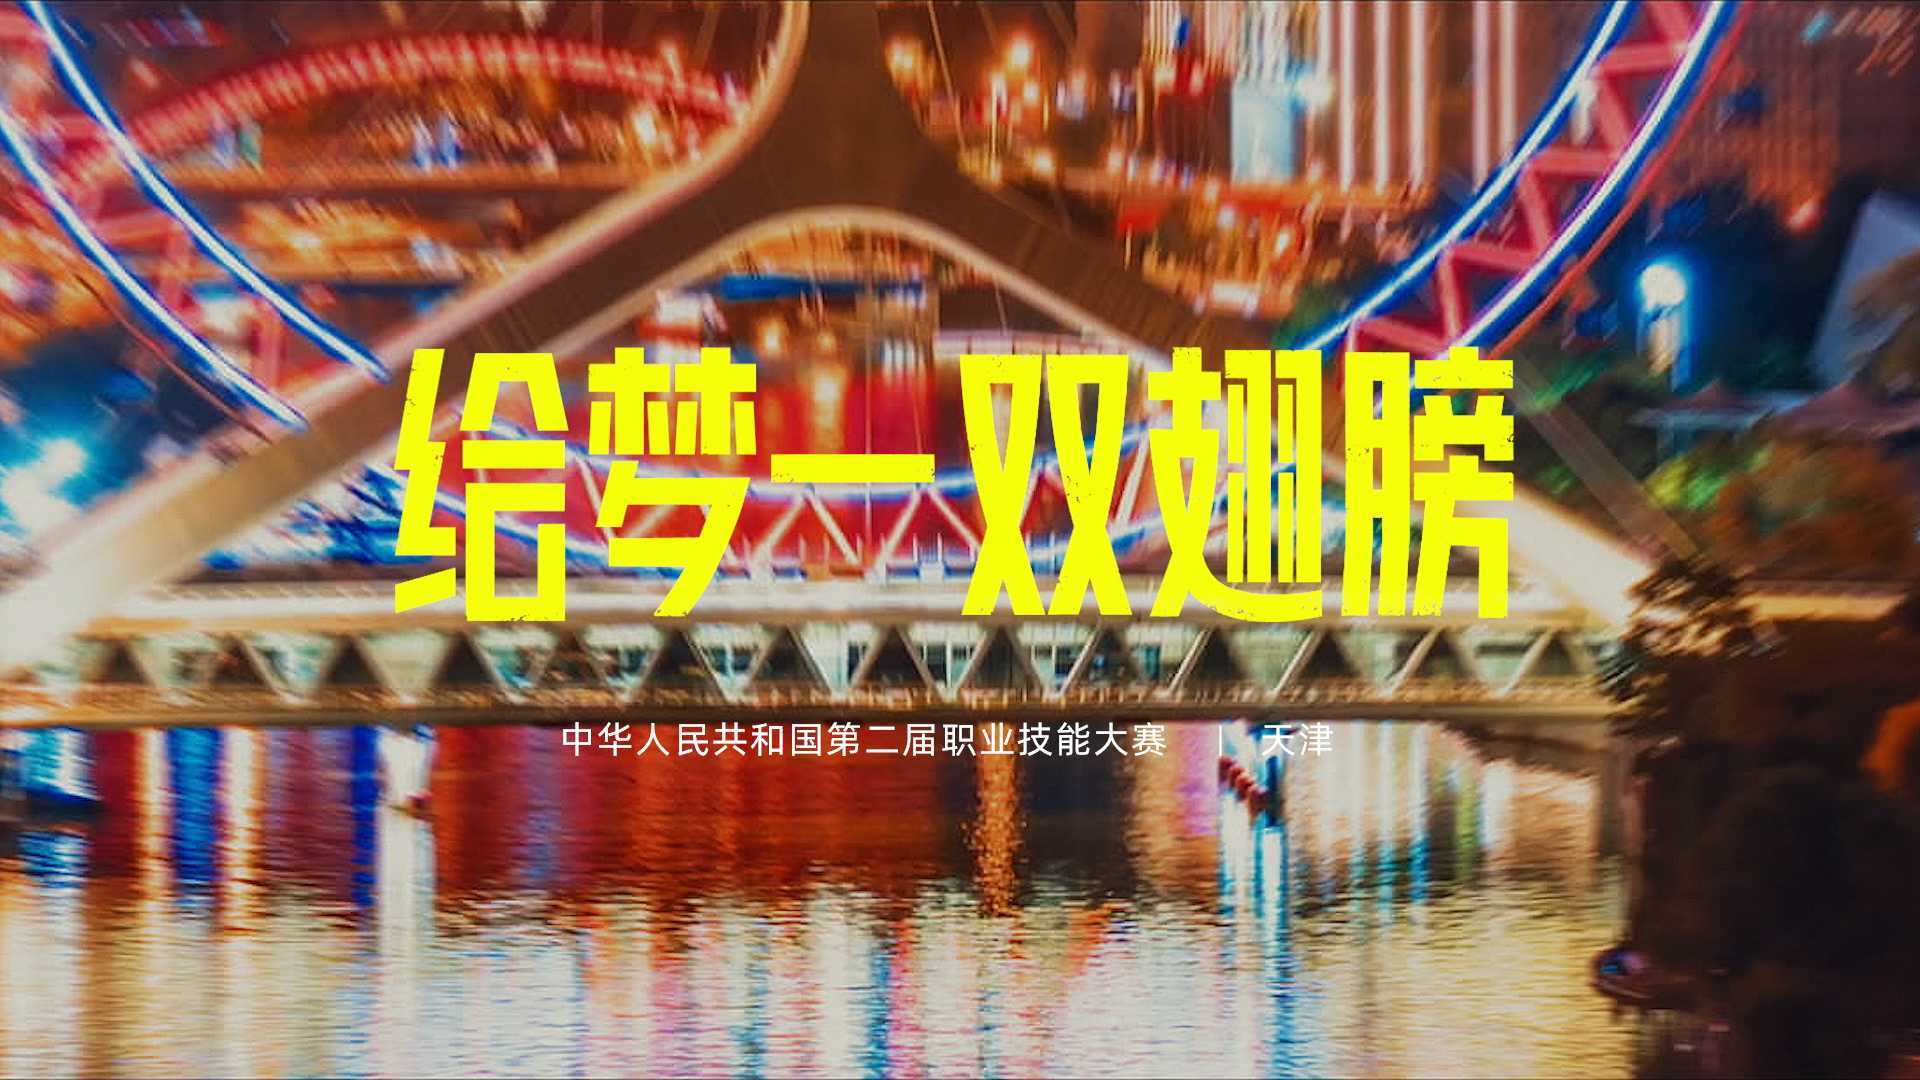 中华人民共和国第二届职业技能大赛主题曲MV—给梦一双翅膀_Dir